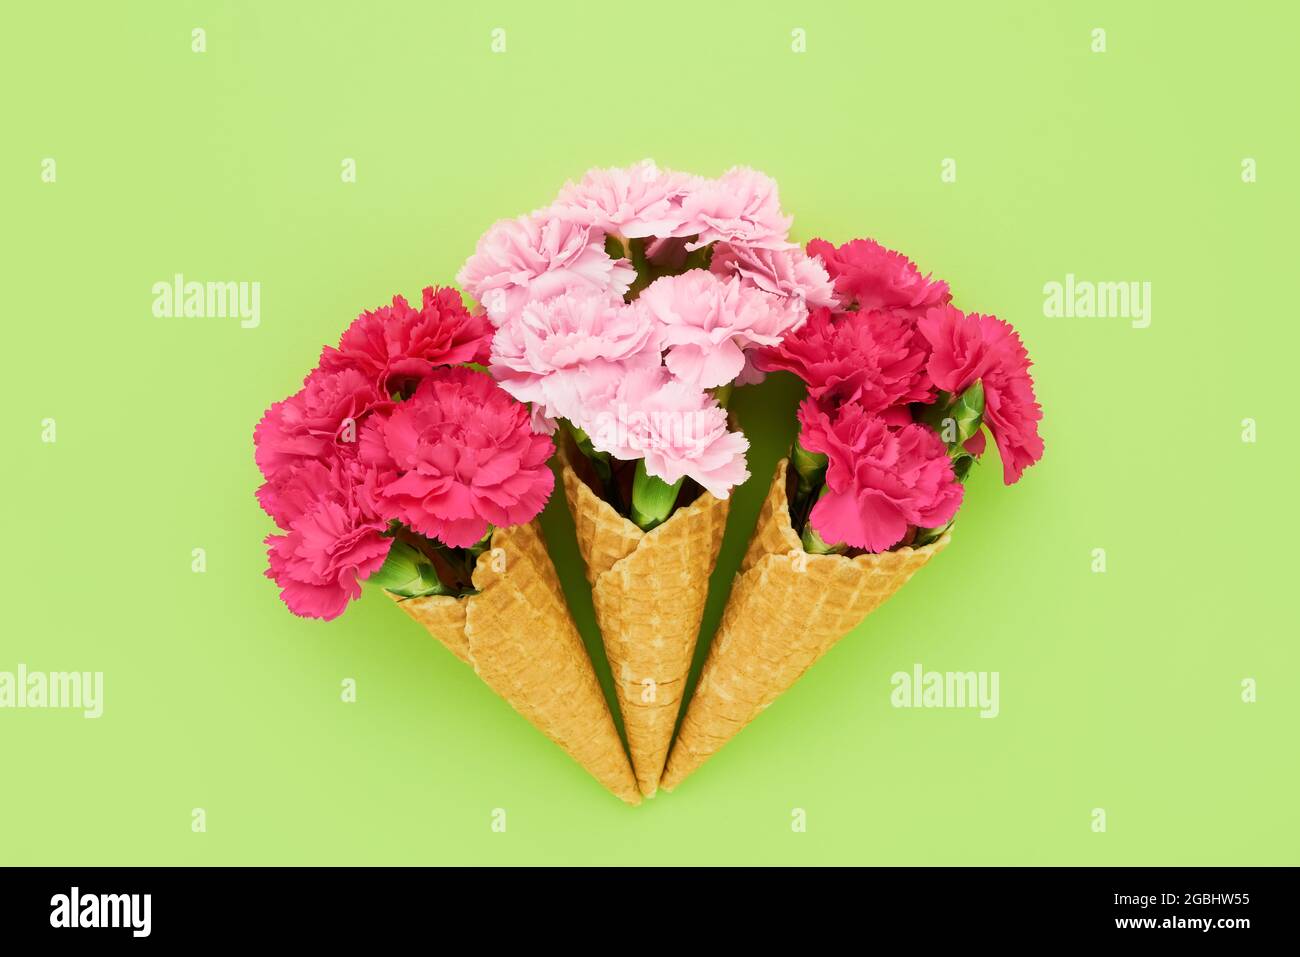 Drei Eiszapfen mit Waffel und rosa Nelkenblüten auf hellgrünem Hintergrund. Sommerkonzept. Platz für Text kopieren, Draufsicht Stockfoto